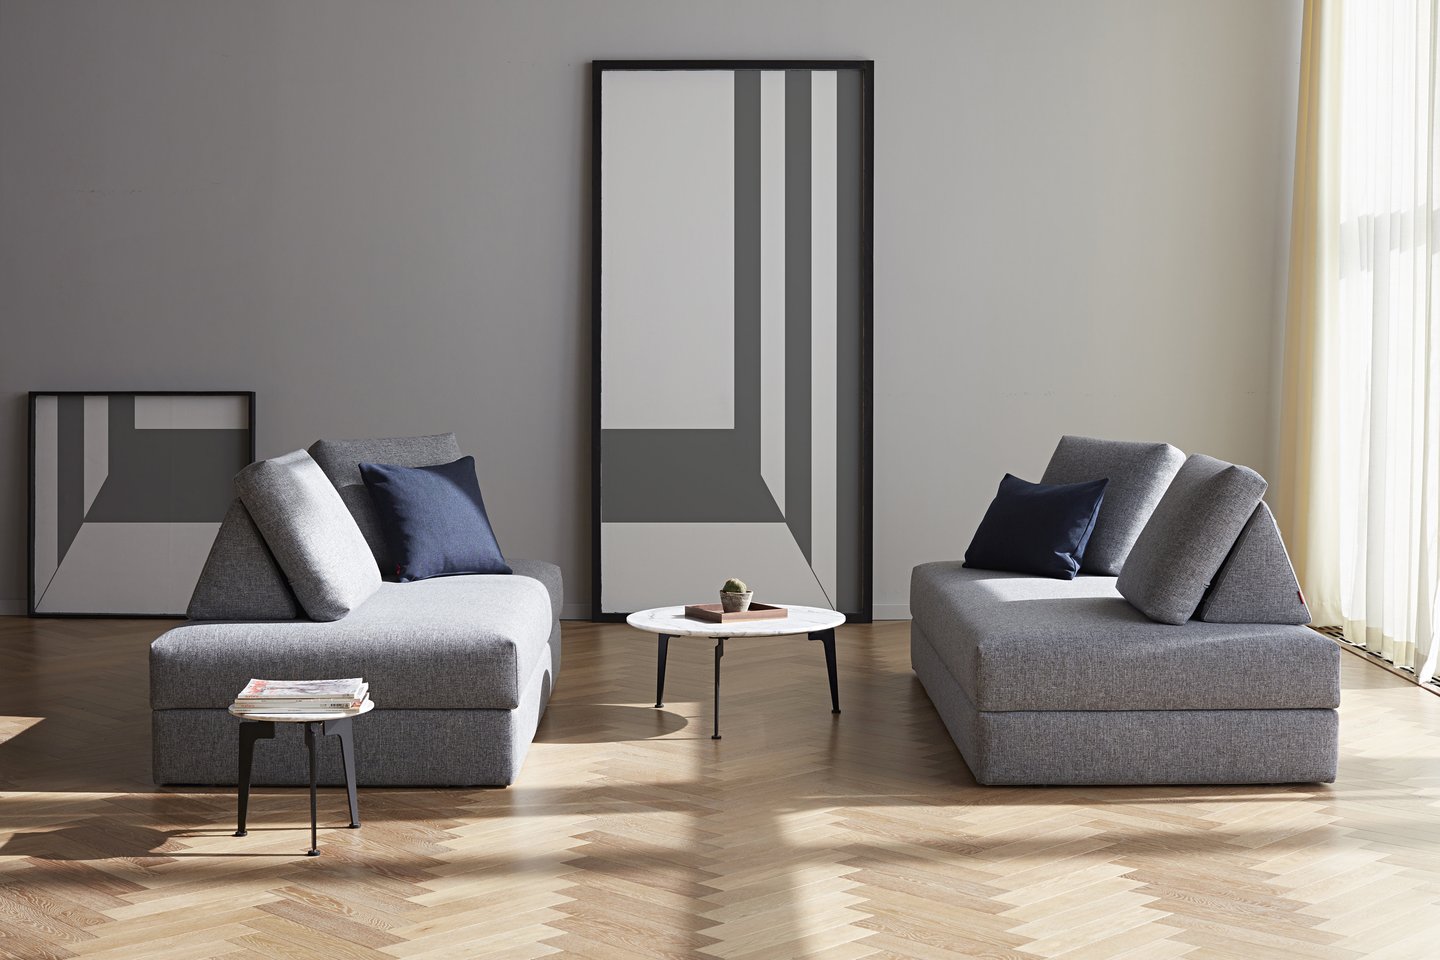 Innovation Living sofa ALL-YOU-NEED. Salonas Skandinaviški interjerai. <br>„Domus Galerija“ nuotr.